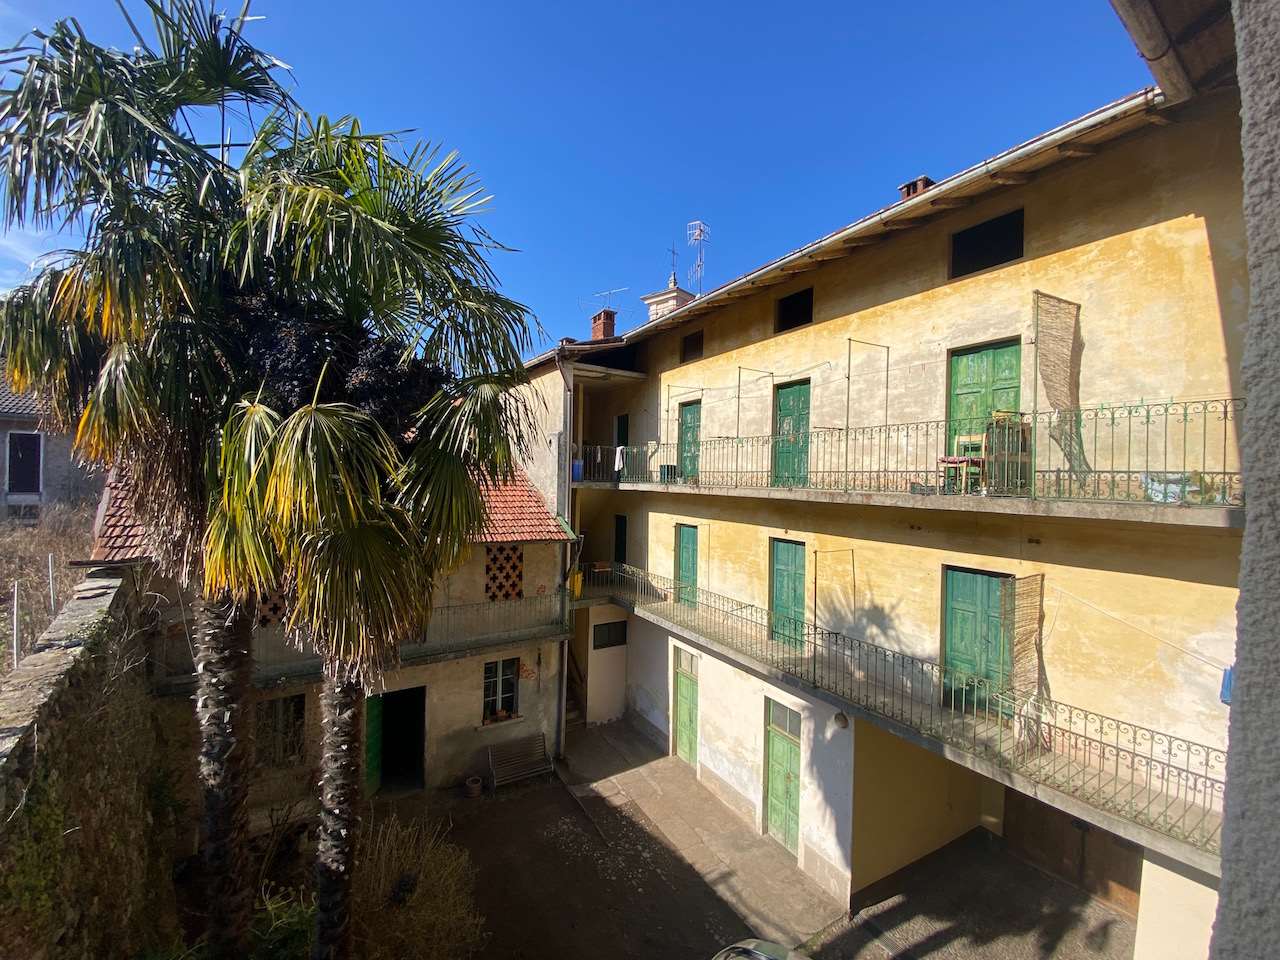 Rustico / Casale in vendita a Orino, 22 locali, prezzo € 180.000 | PortaleAgenzieImmobiliari.it